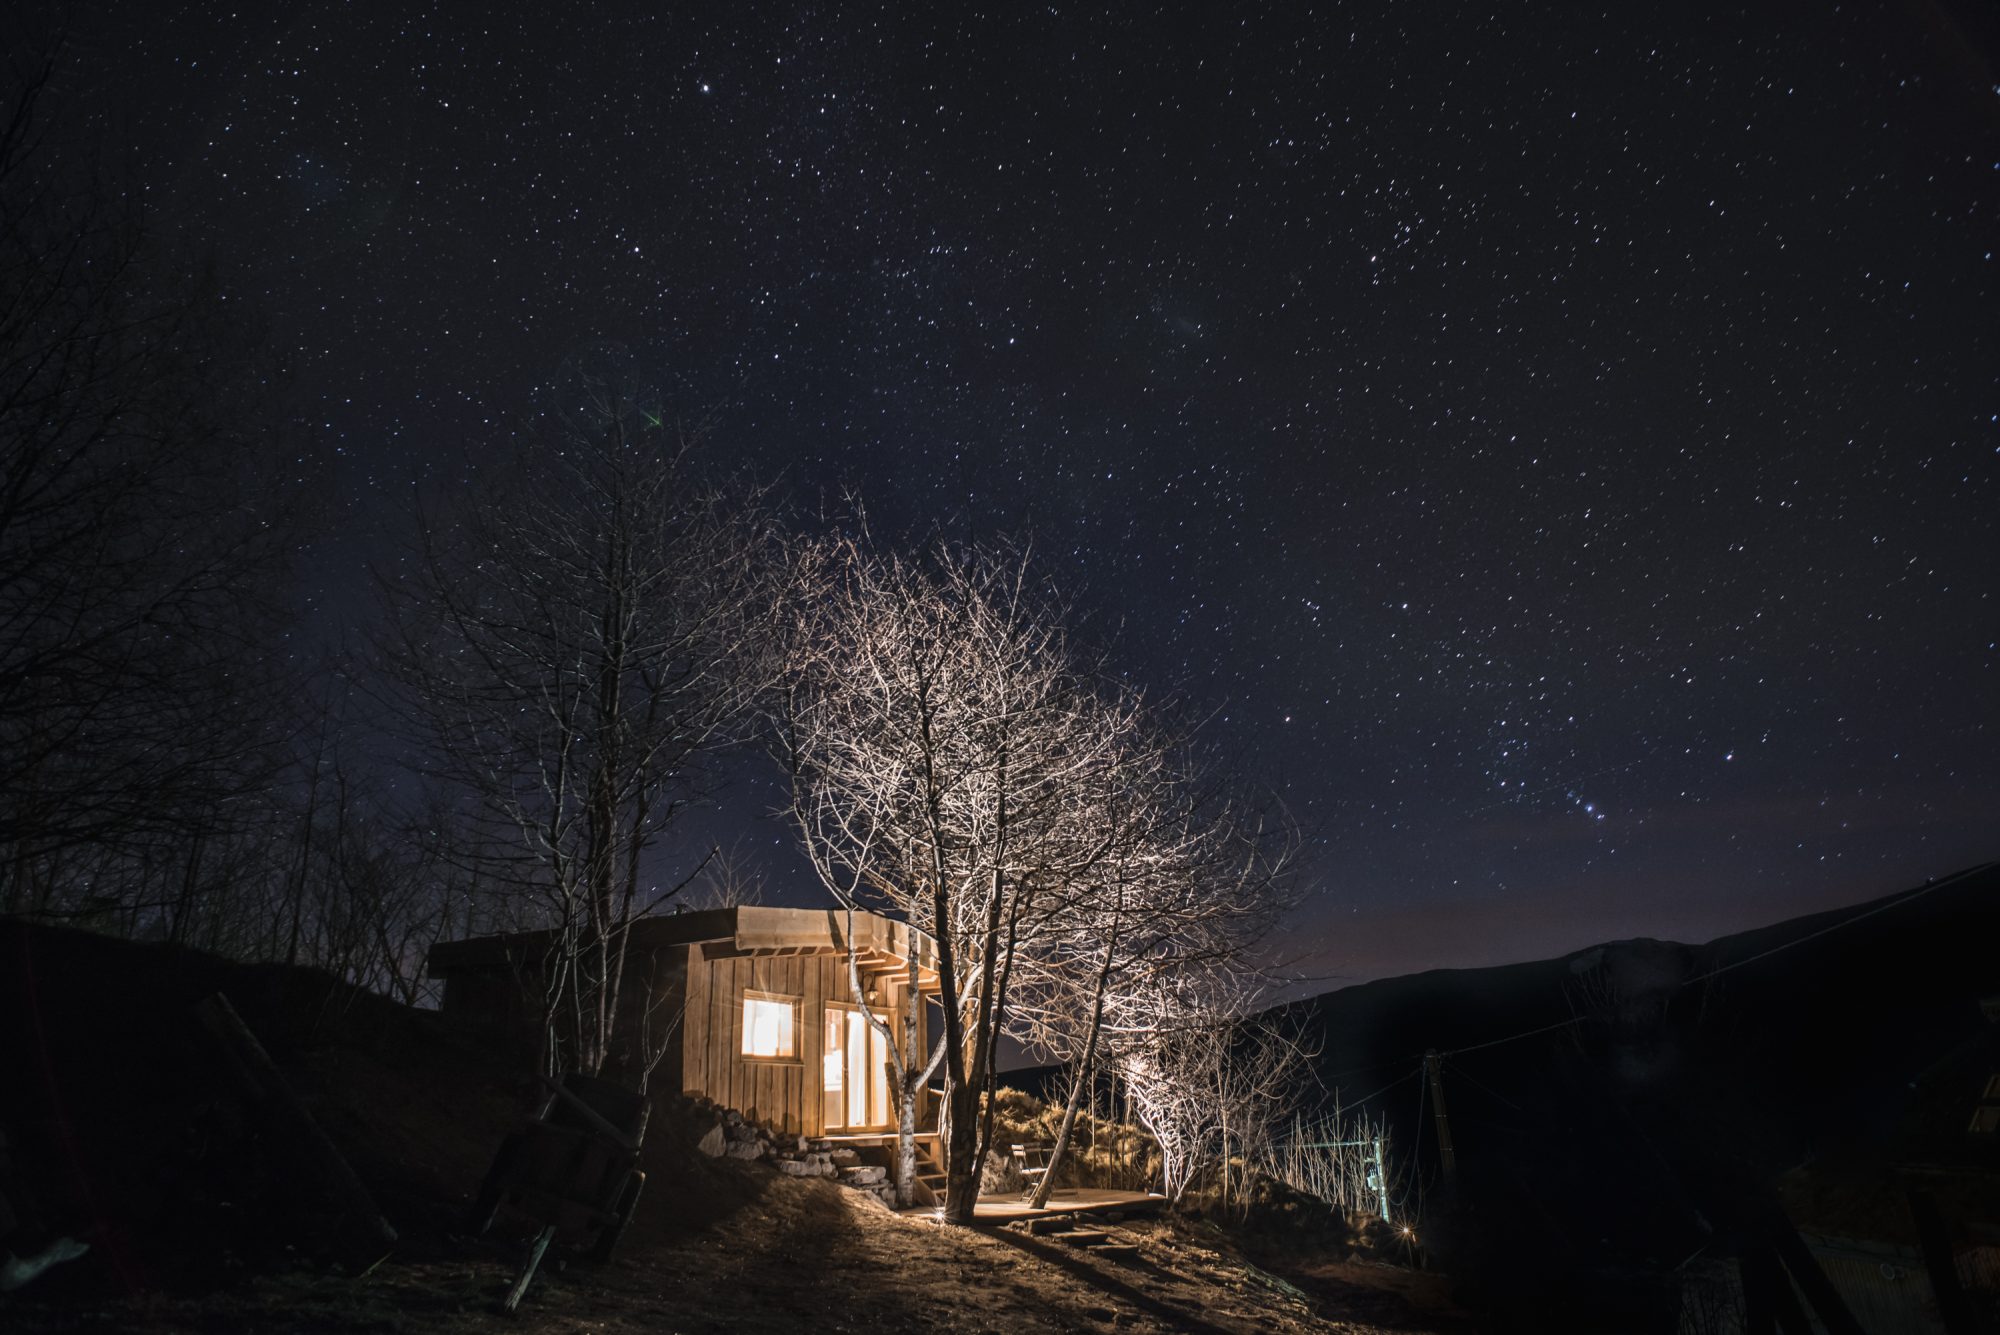 Sous les étoiles, la cabane dans le calme de la nuit. Photo ©Christophe Rabinovici